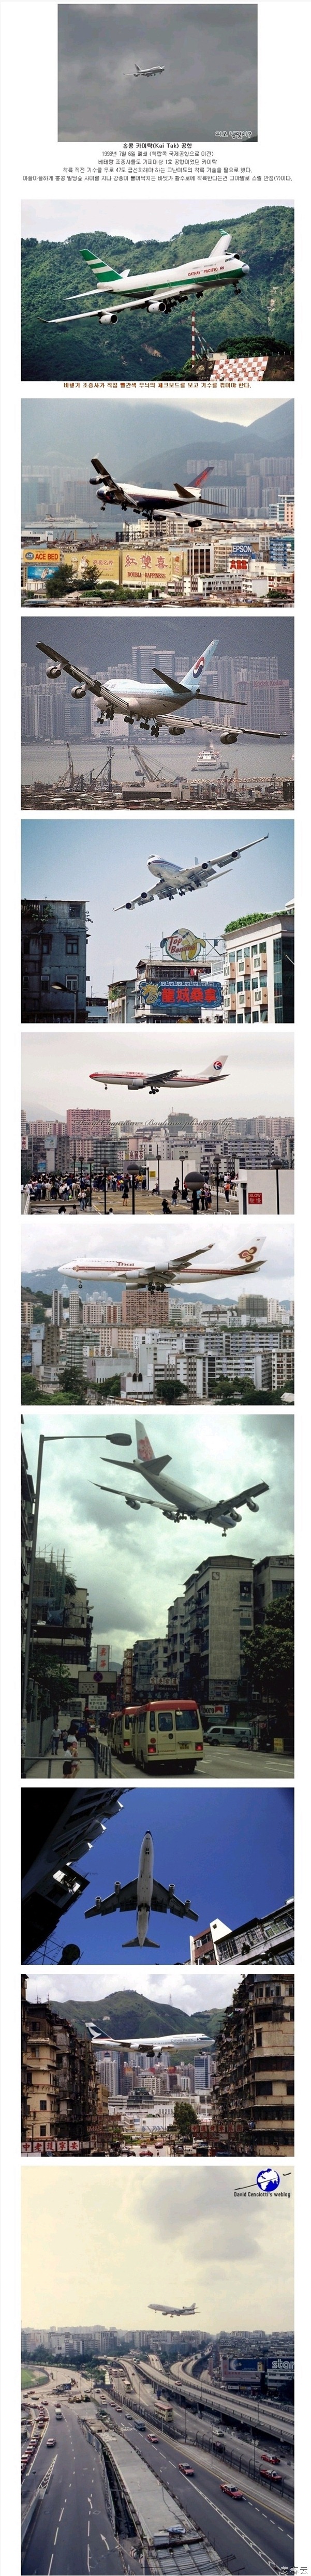 비행기 조종사들 똥줄 태웠다던 홍콩 카이탁 공항